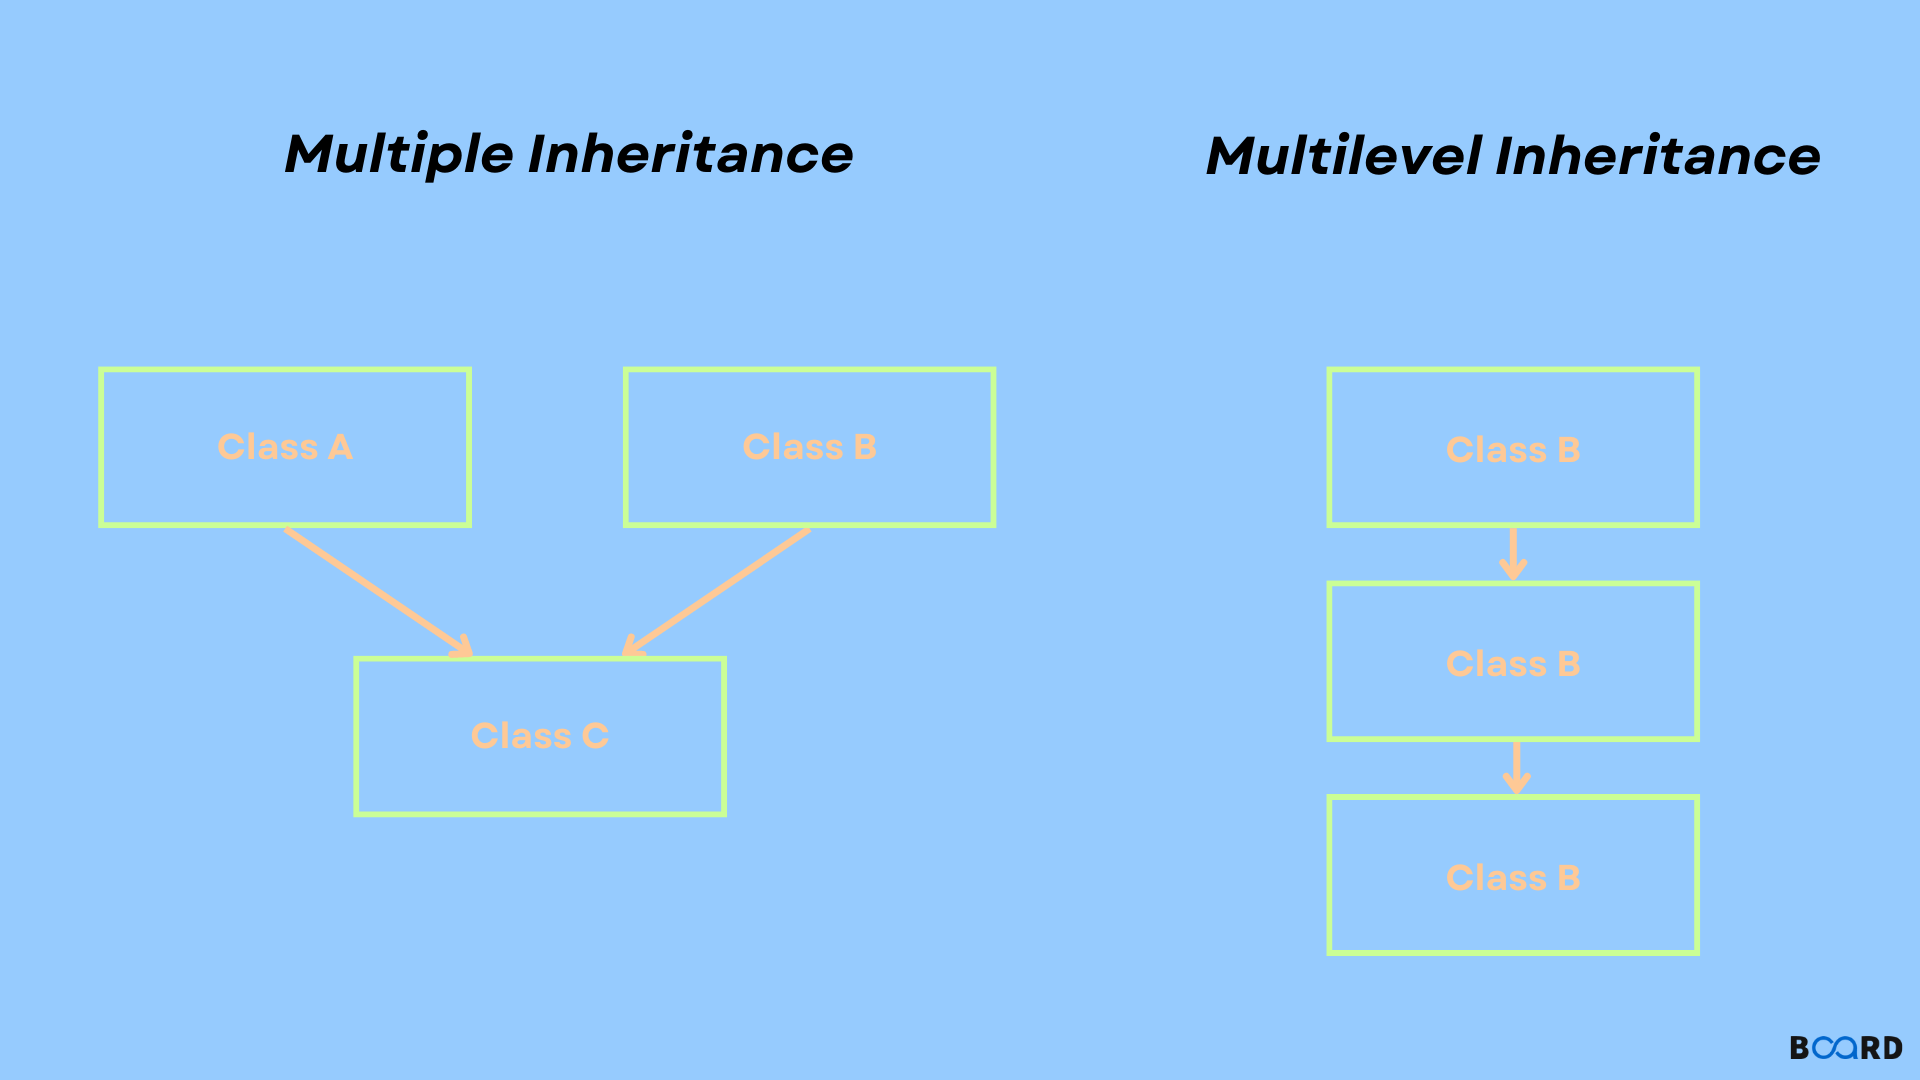 Multiple Inheritance in C++